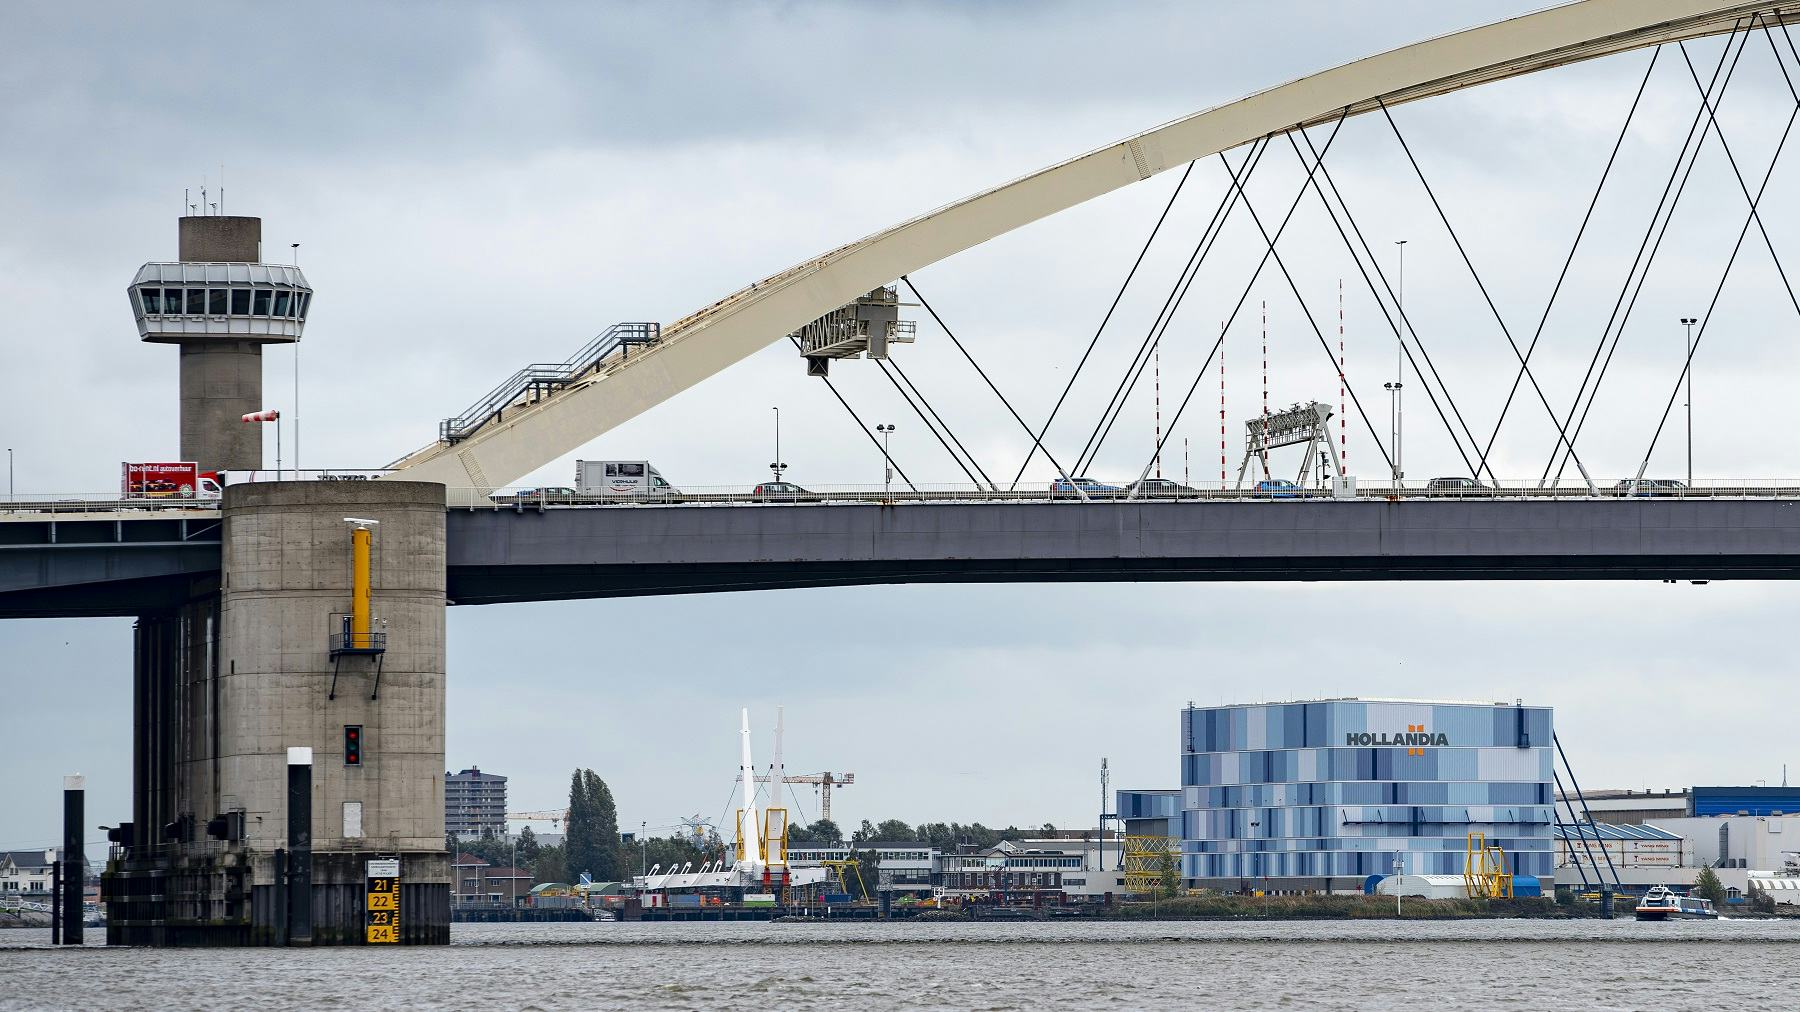 Hollandia heeft vlak bij de Van Brienenoordbrug een werf.
Foto: Guido Benschop